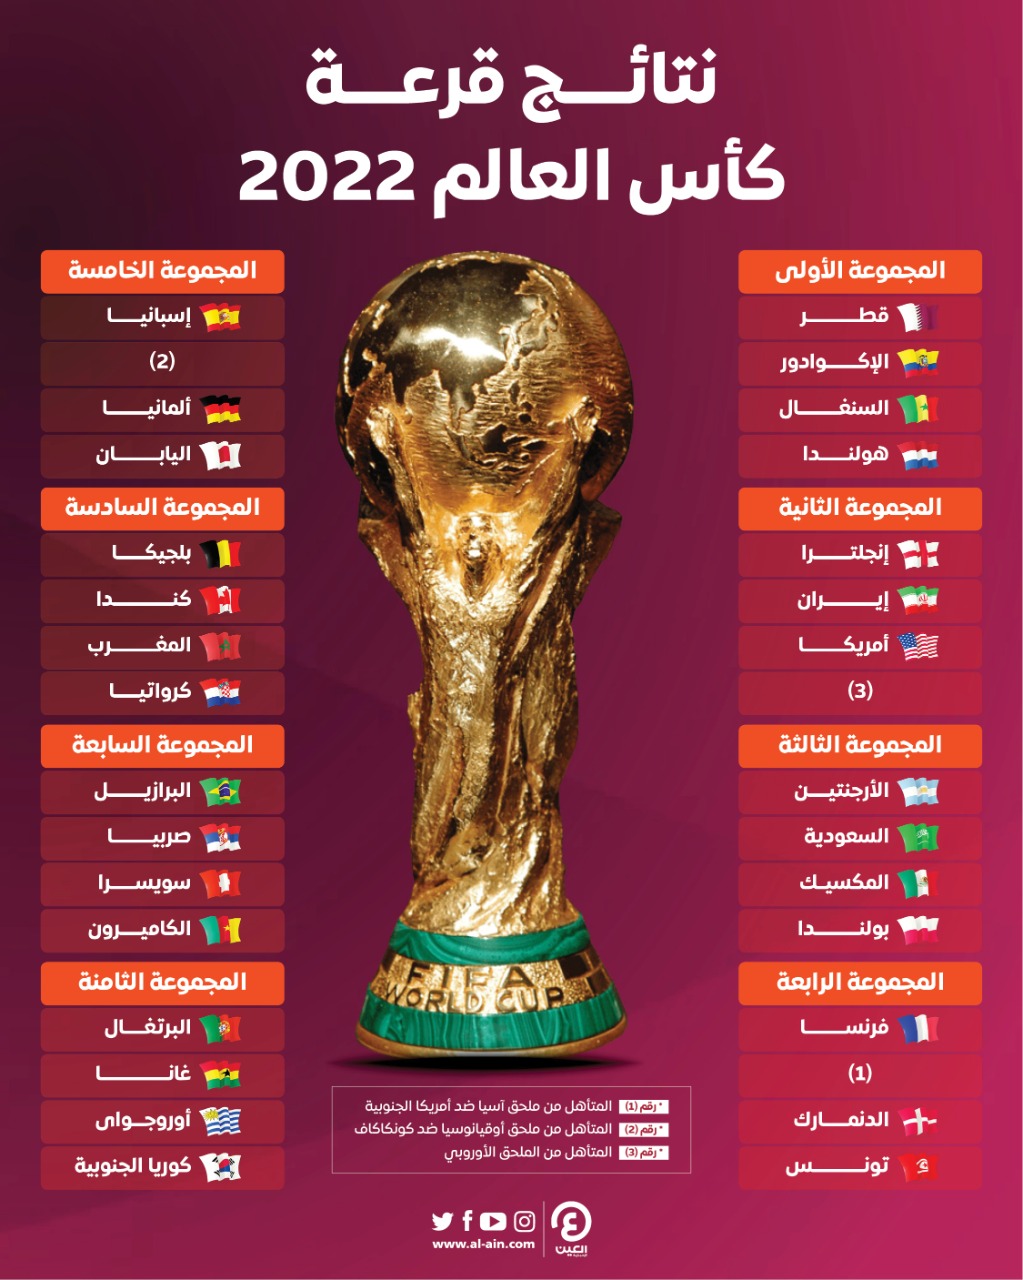 مجموعات كاس العالم قطر 2022، تردد قناة الهوية، القنوات المفتوحة الناقلة لكأس العالم قطر 2022